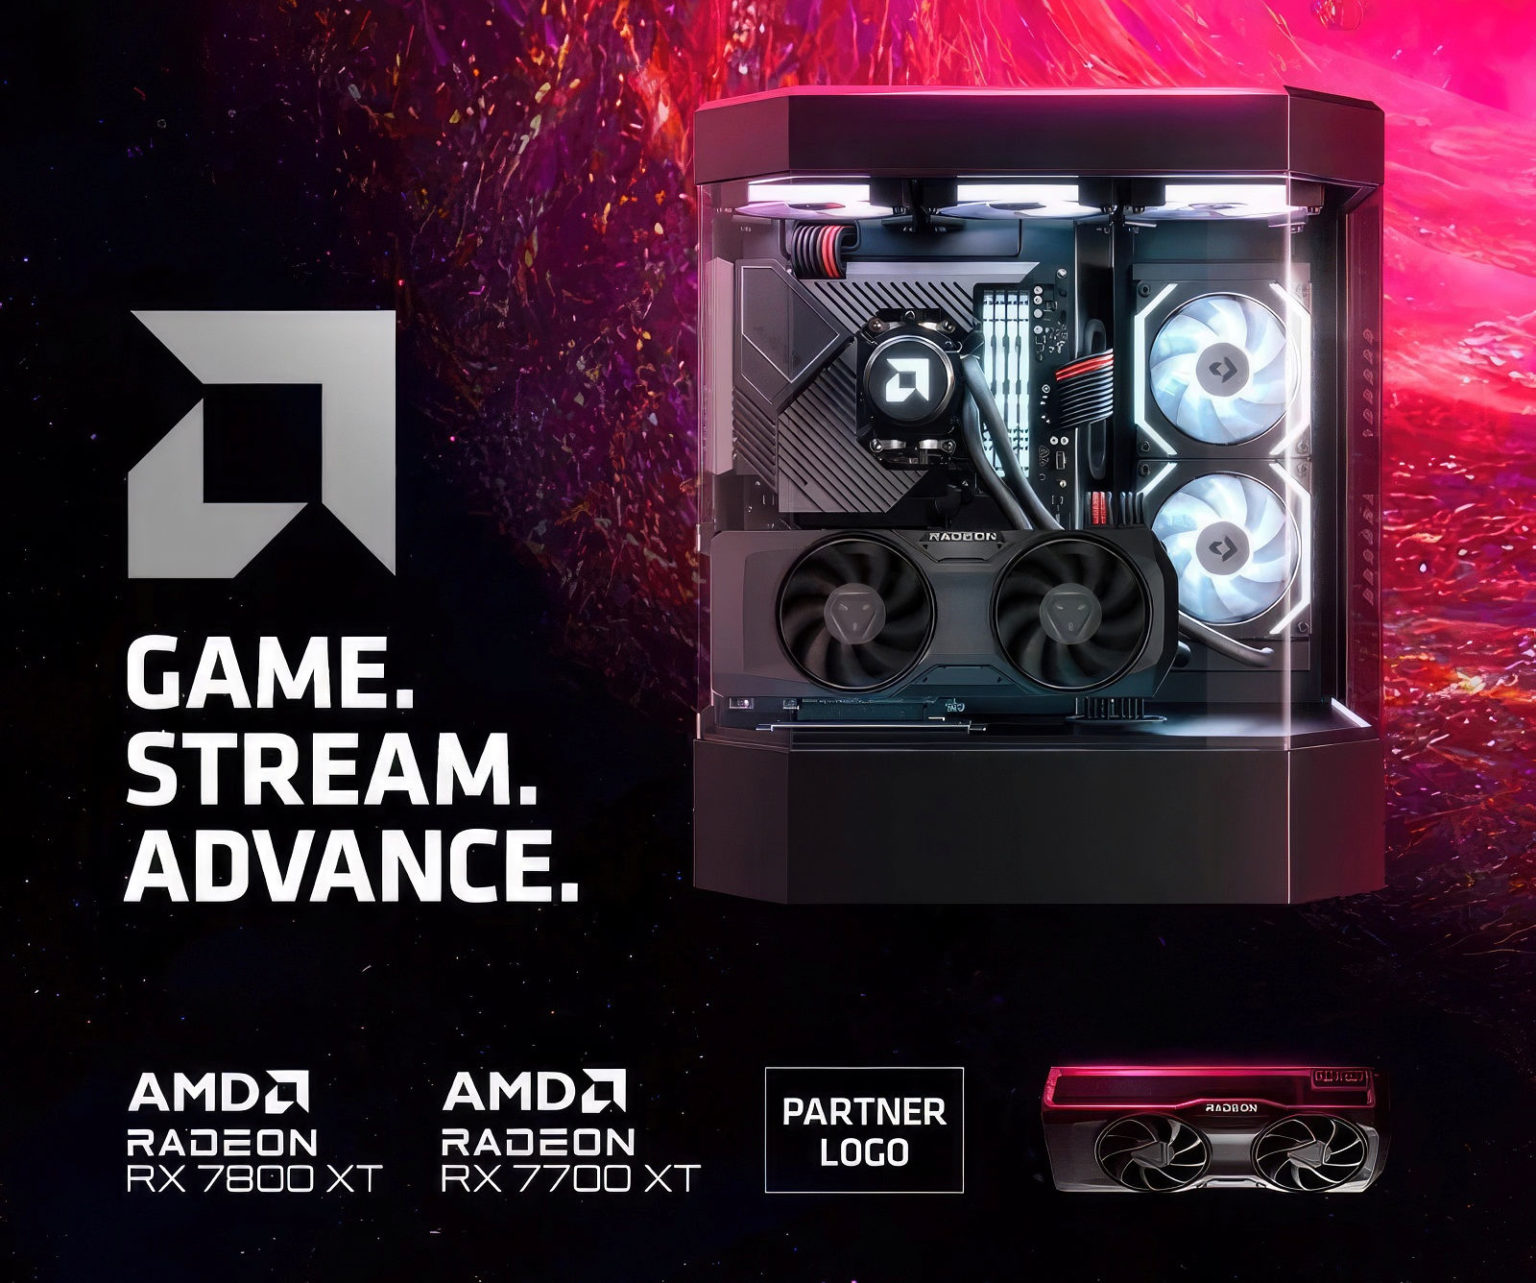 AMD 無意中曝光了 RX 7800 XT、RX 7700 XT 公版外觀